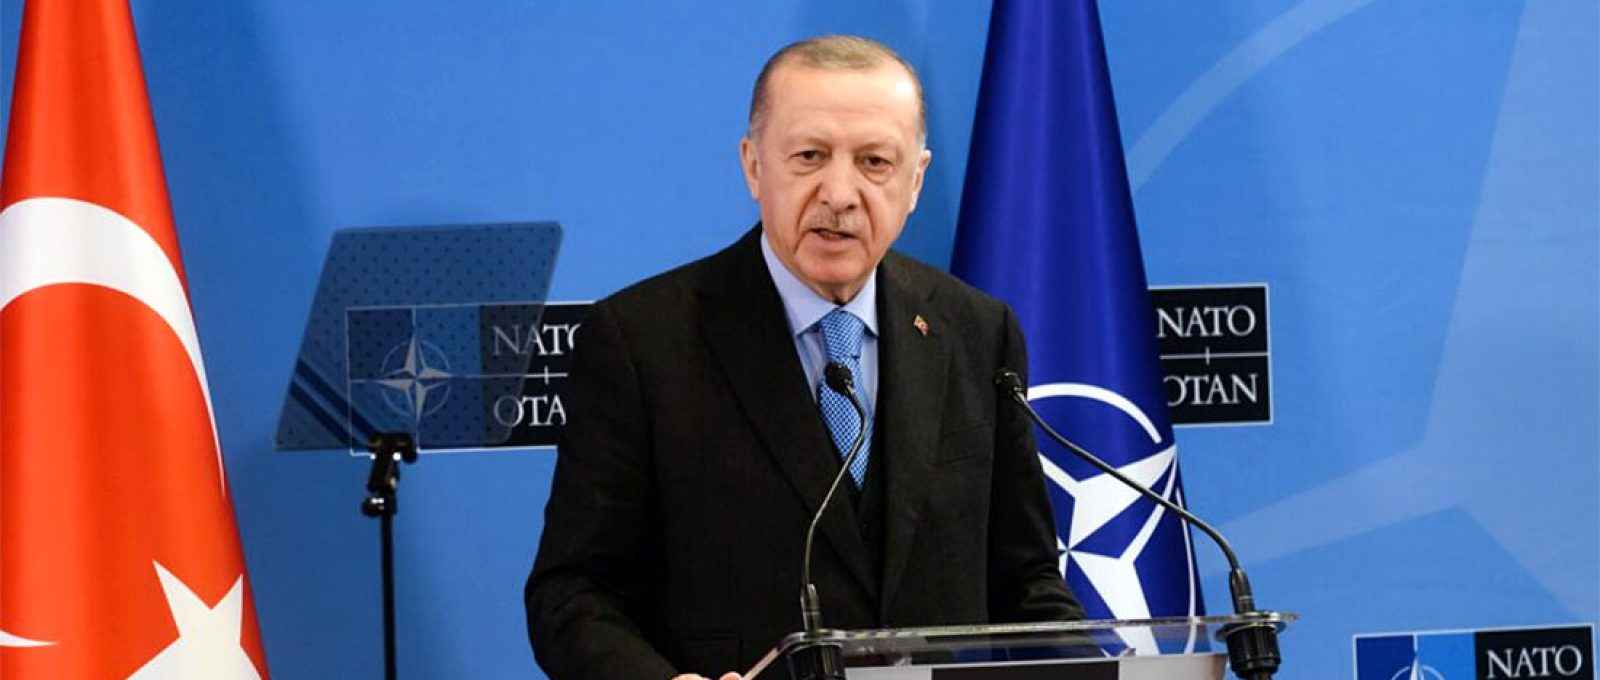 Recep Tayyip Erdogan, presidente da Turquia, em coletiva de imprensa após a Cúpula da OTAN em Bruxelas, Bélgica, em 24 de março de 2022 (Gints Ivuskans/Shutterstock).